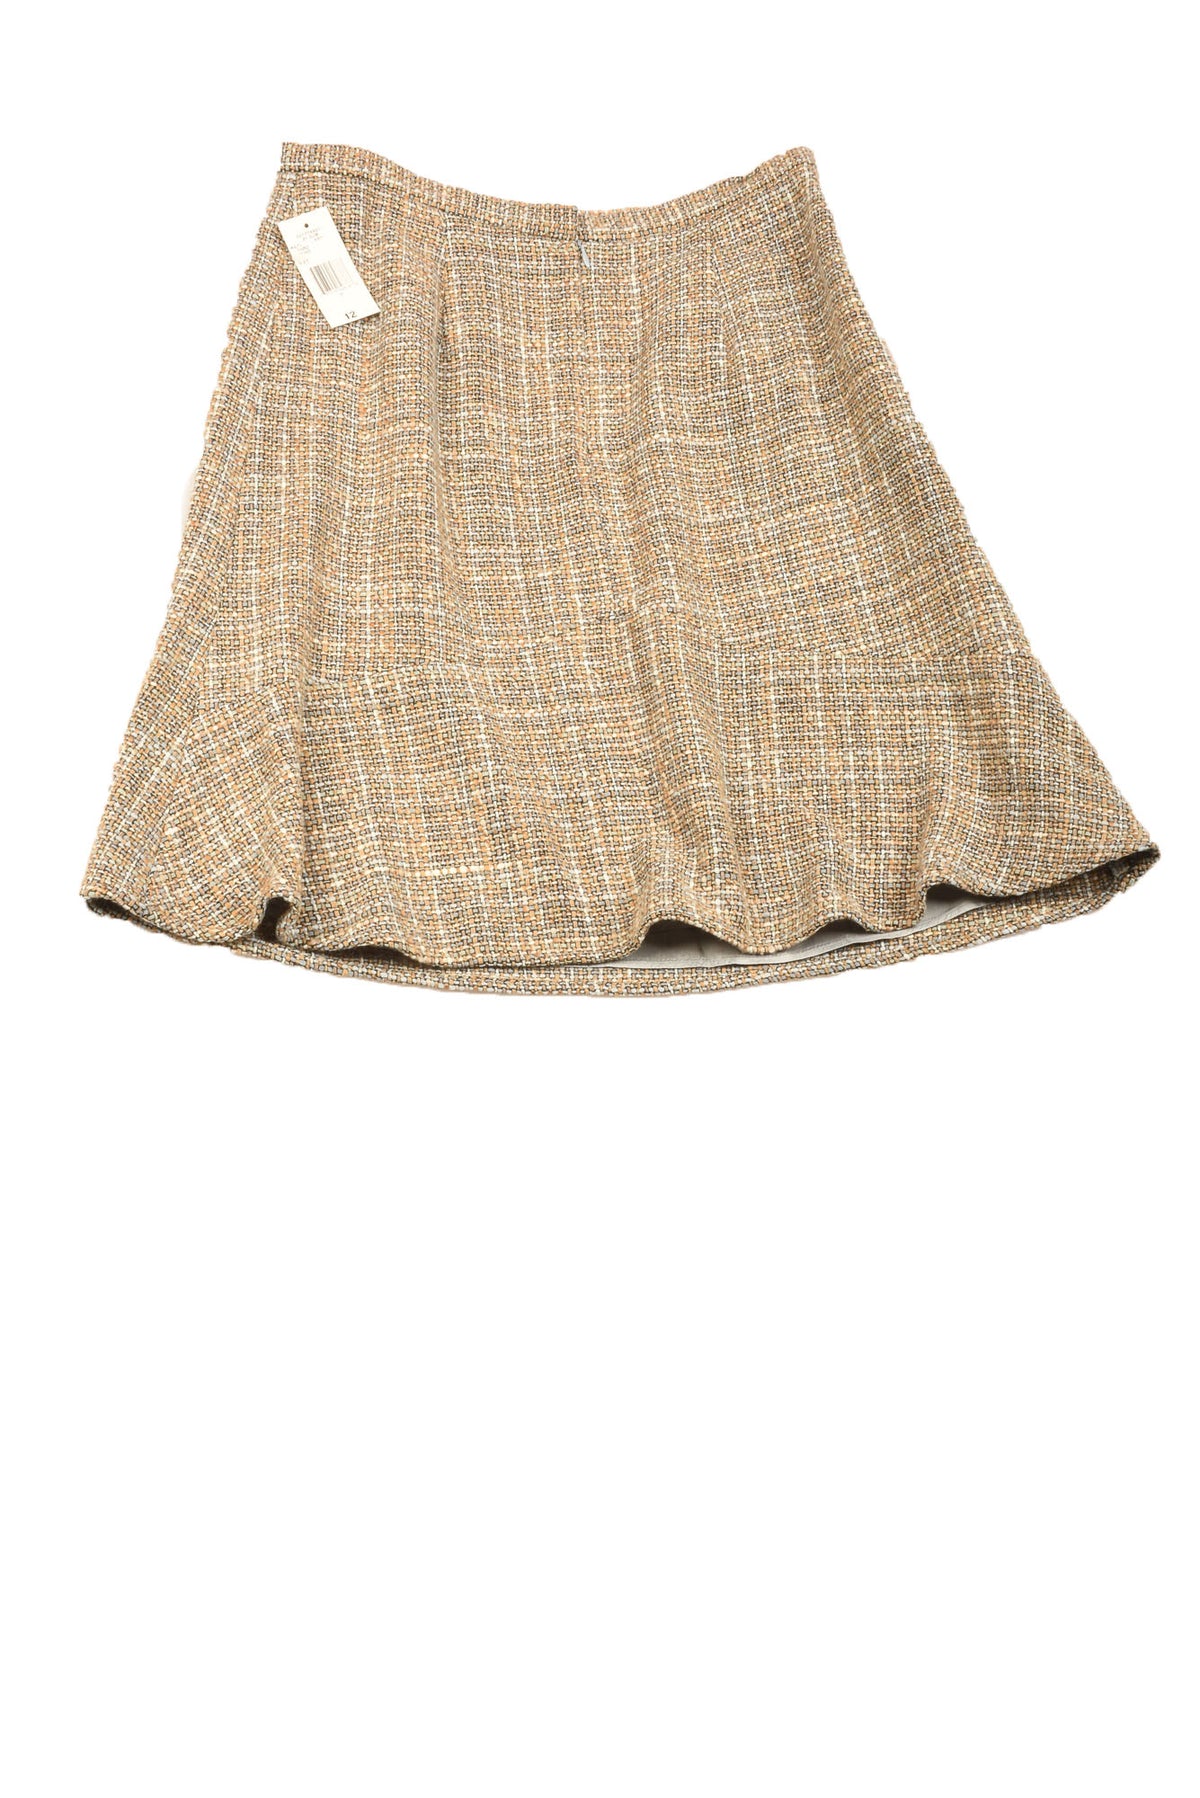 Jones New York Size 12 Women&#39;s Skirt